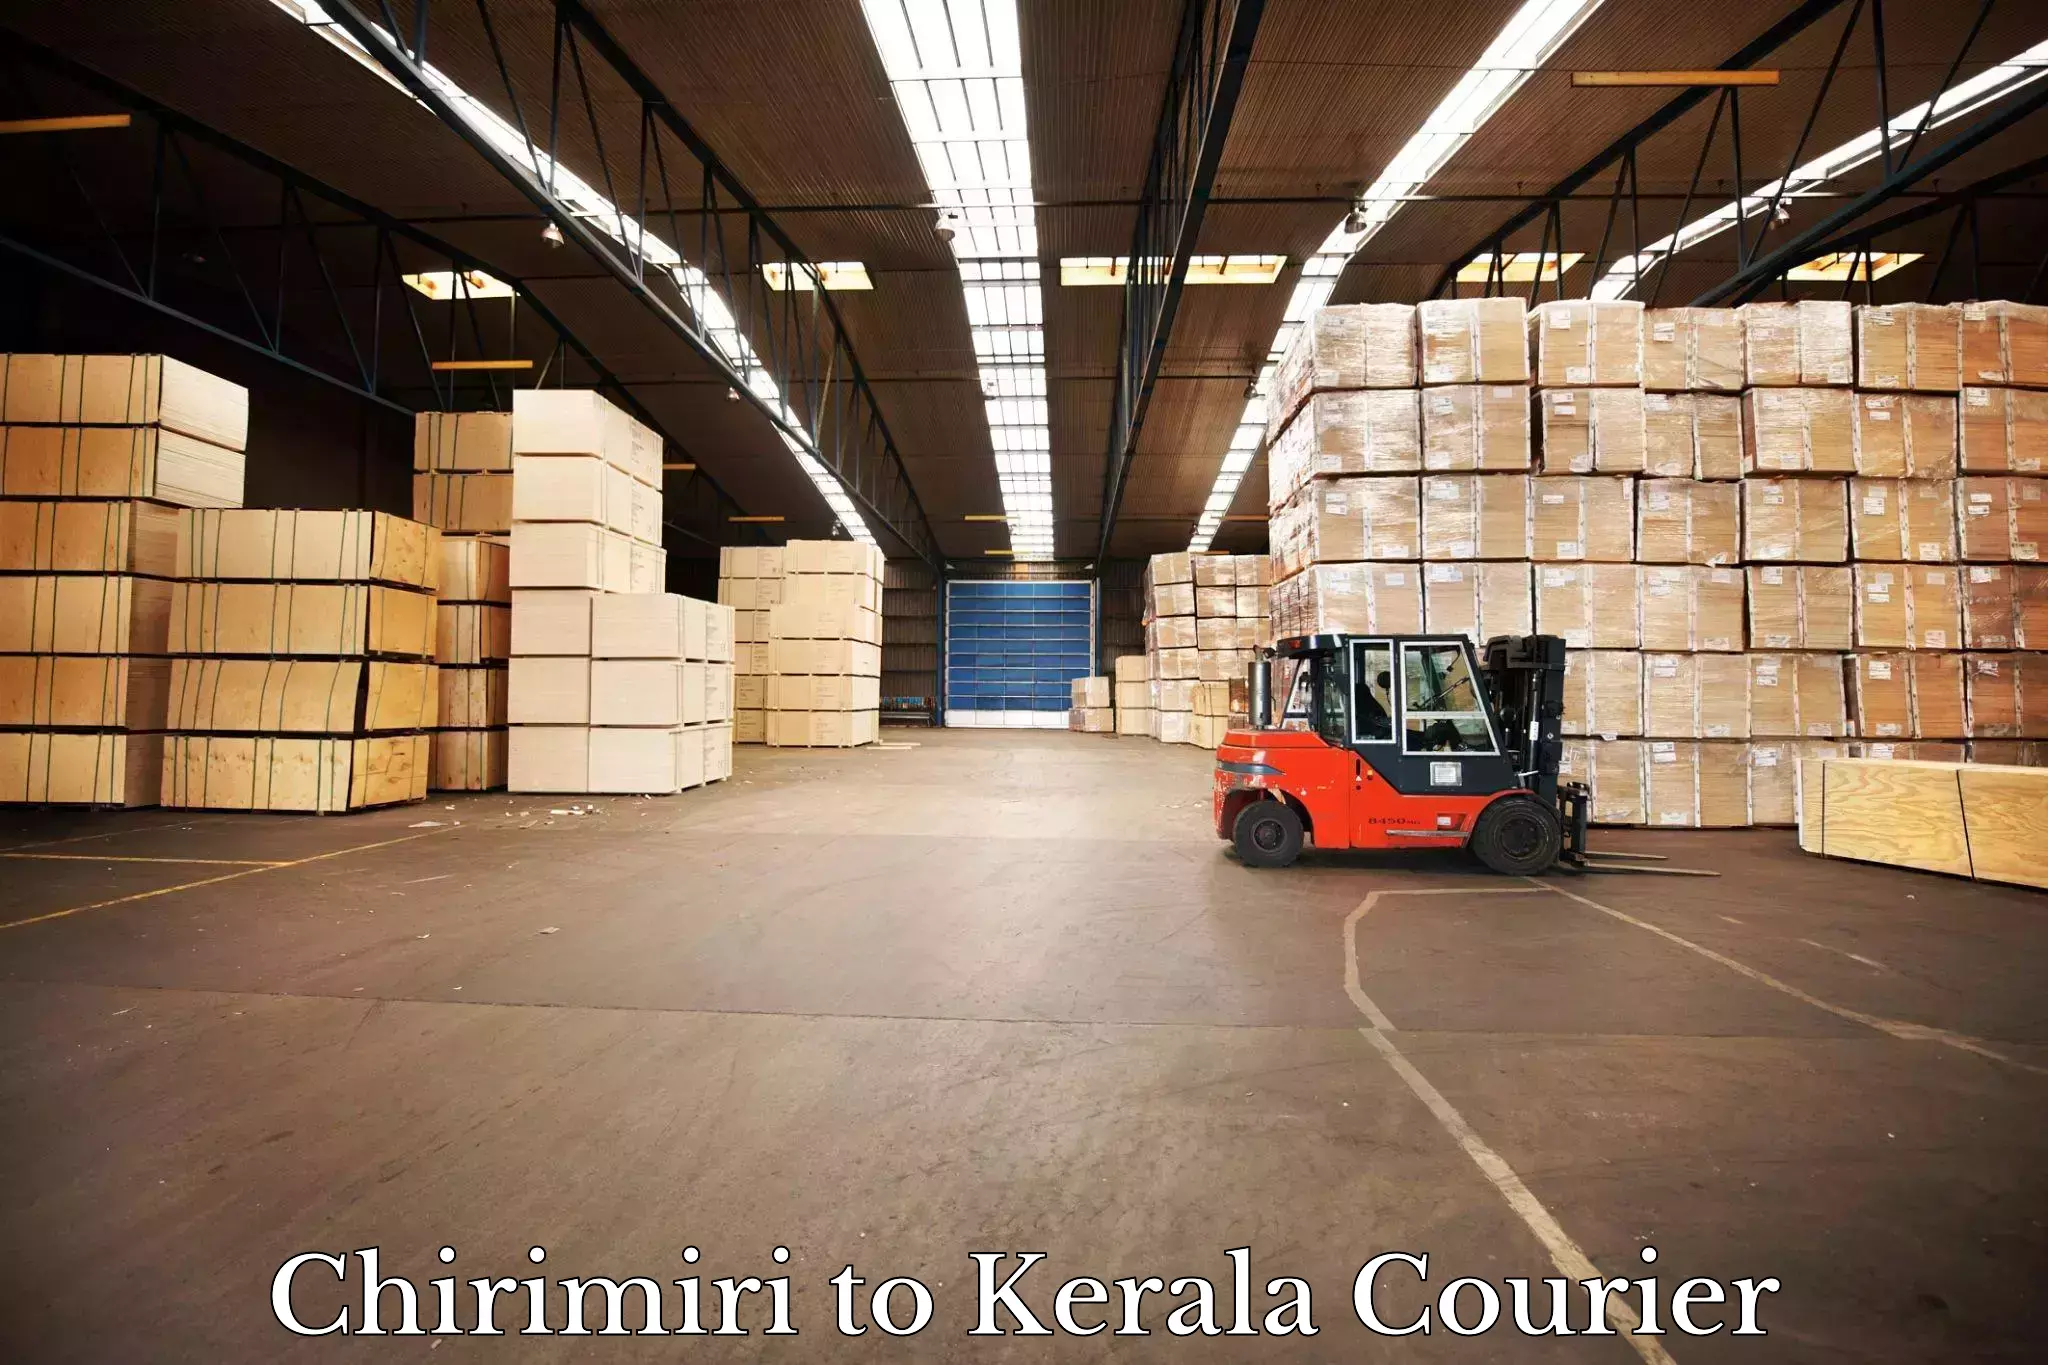 Customer-focused courier Chirimiri to Kakkayam